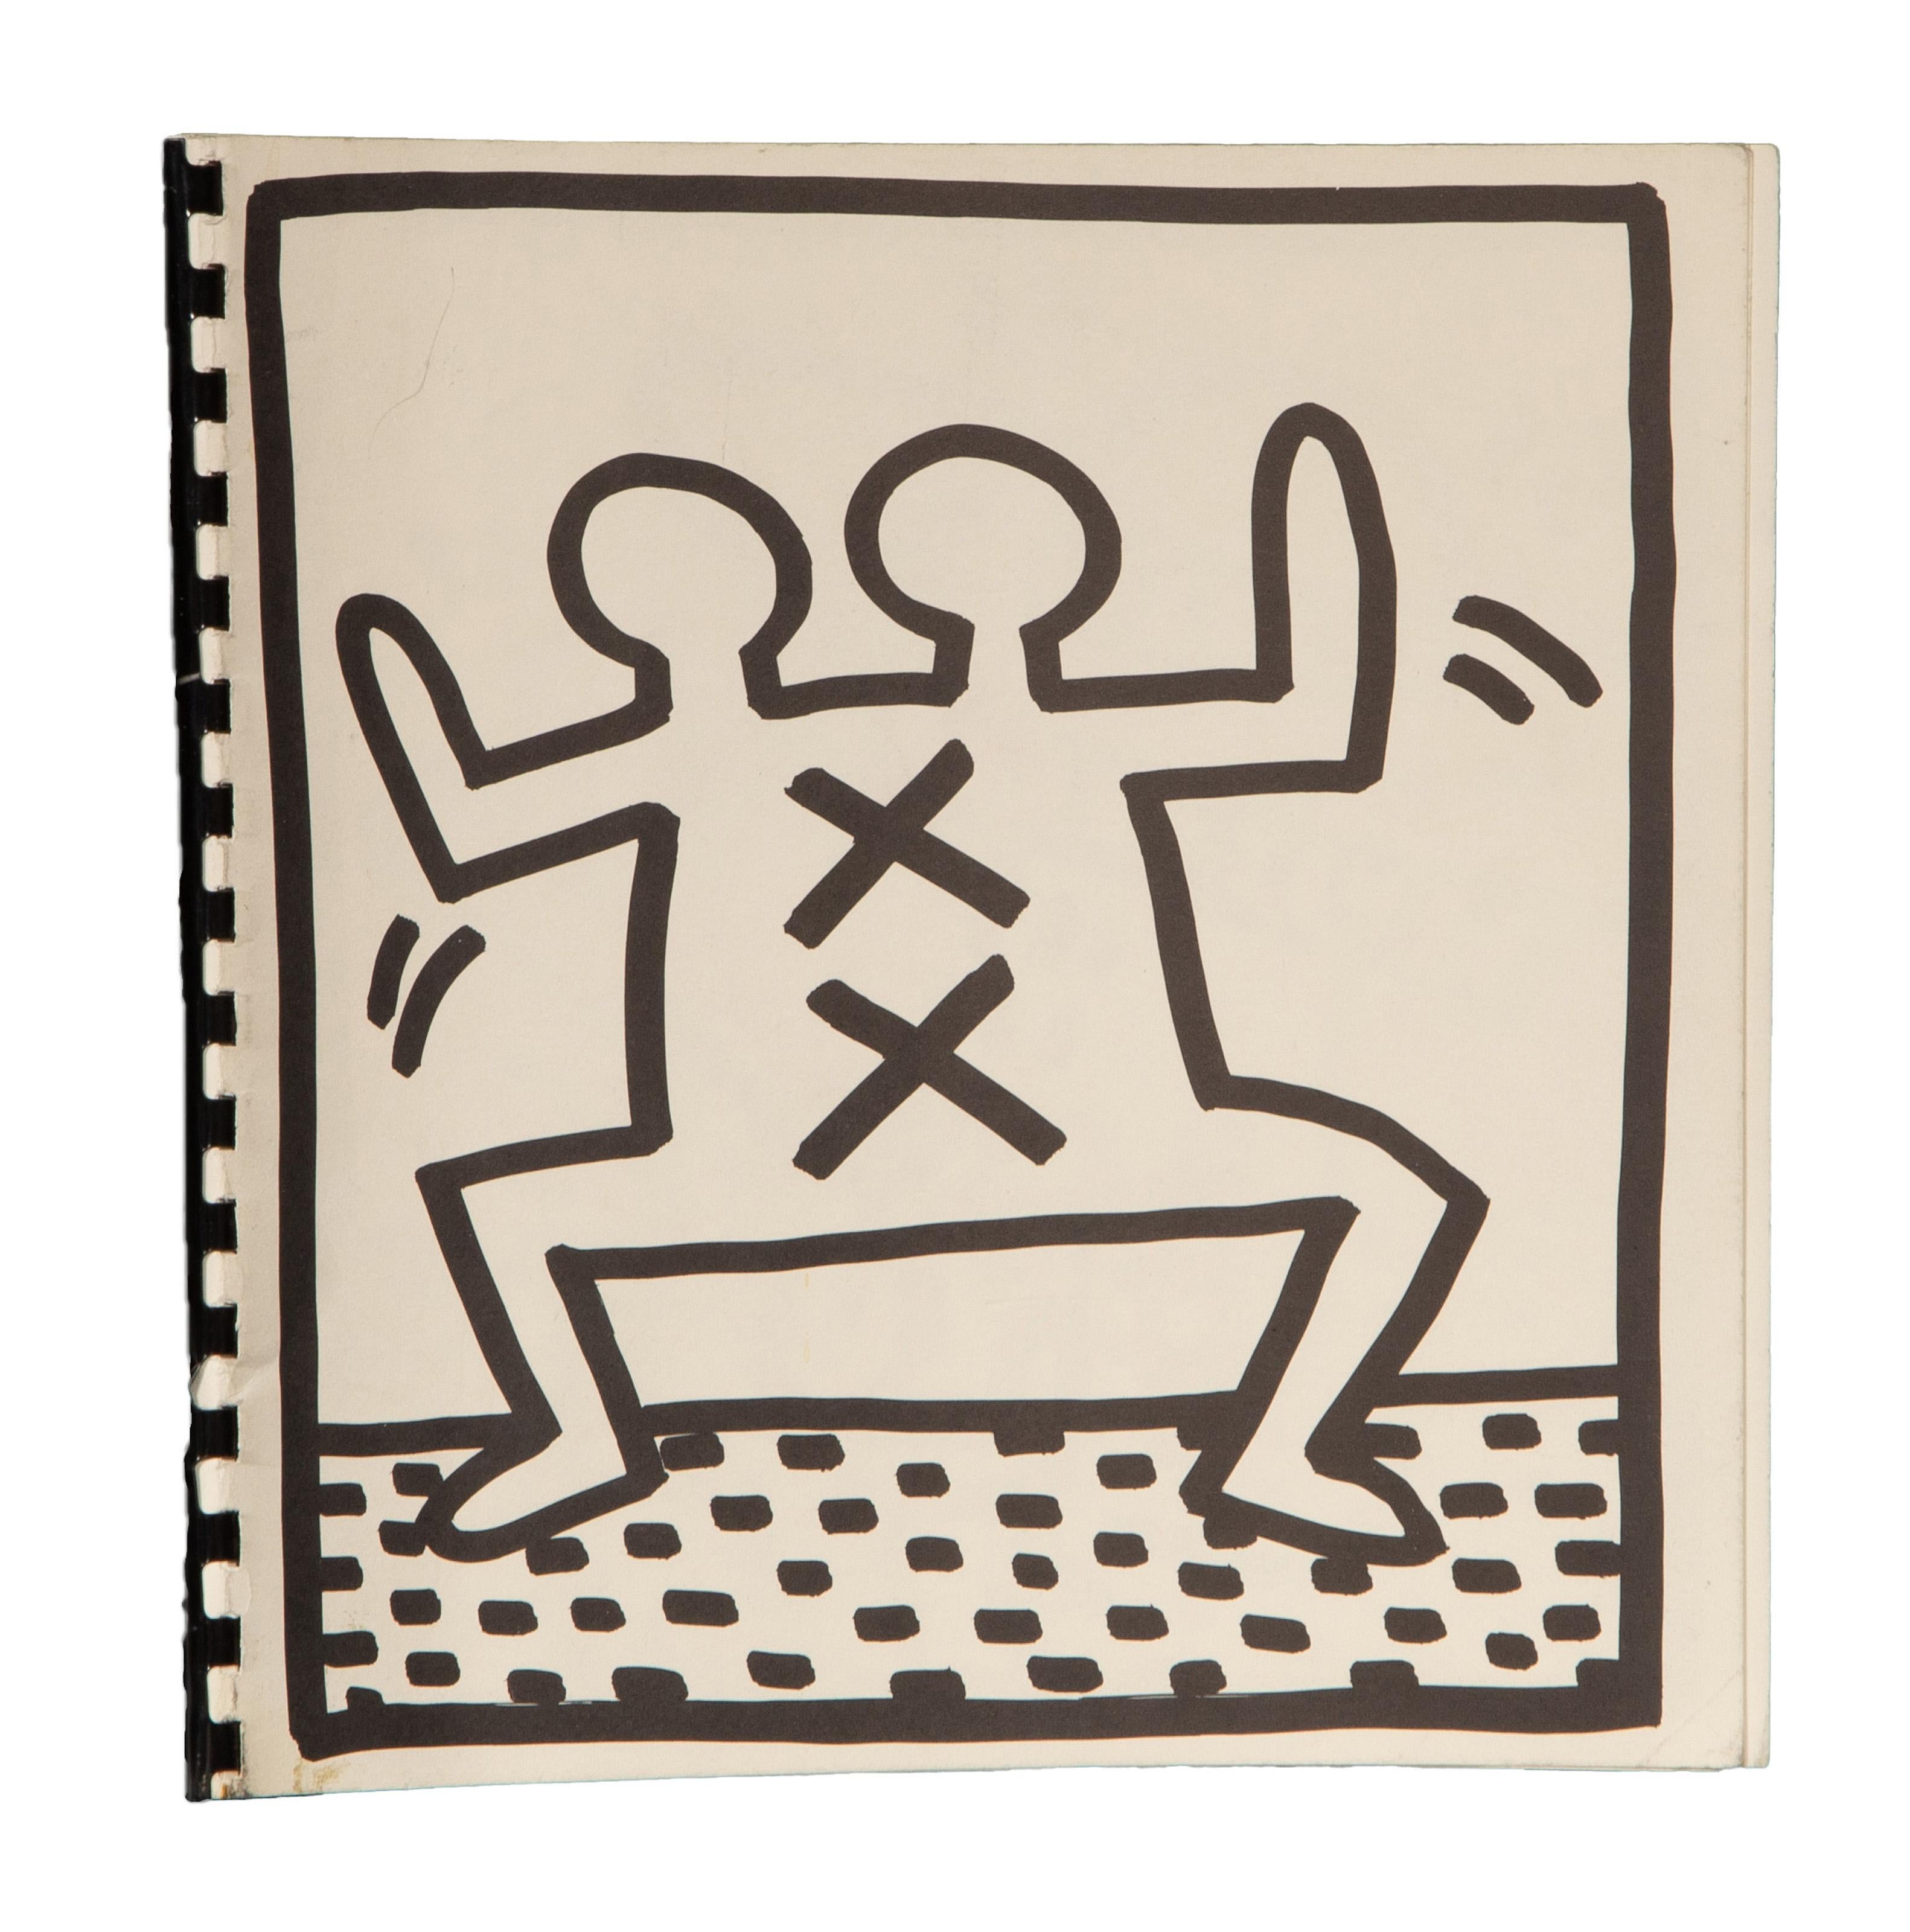 Ein Blanko-Malbuch, entworfen und gedruckt vom amerikanischen Pop-Künstler Keith Haring. Diese Sammlung ist spiralgebunden und enthält mehrere Illustrationen im klassischen Stil des Künstlers.

Malbuch
Keith Haring, Amerikaner (1958-1990)
Datum: